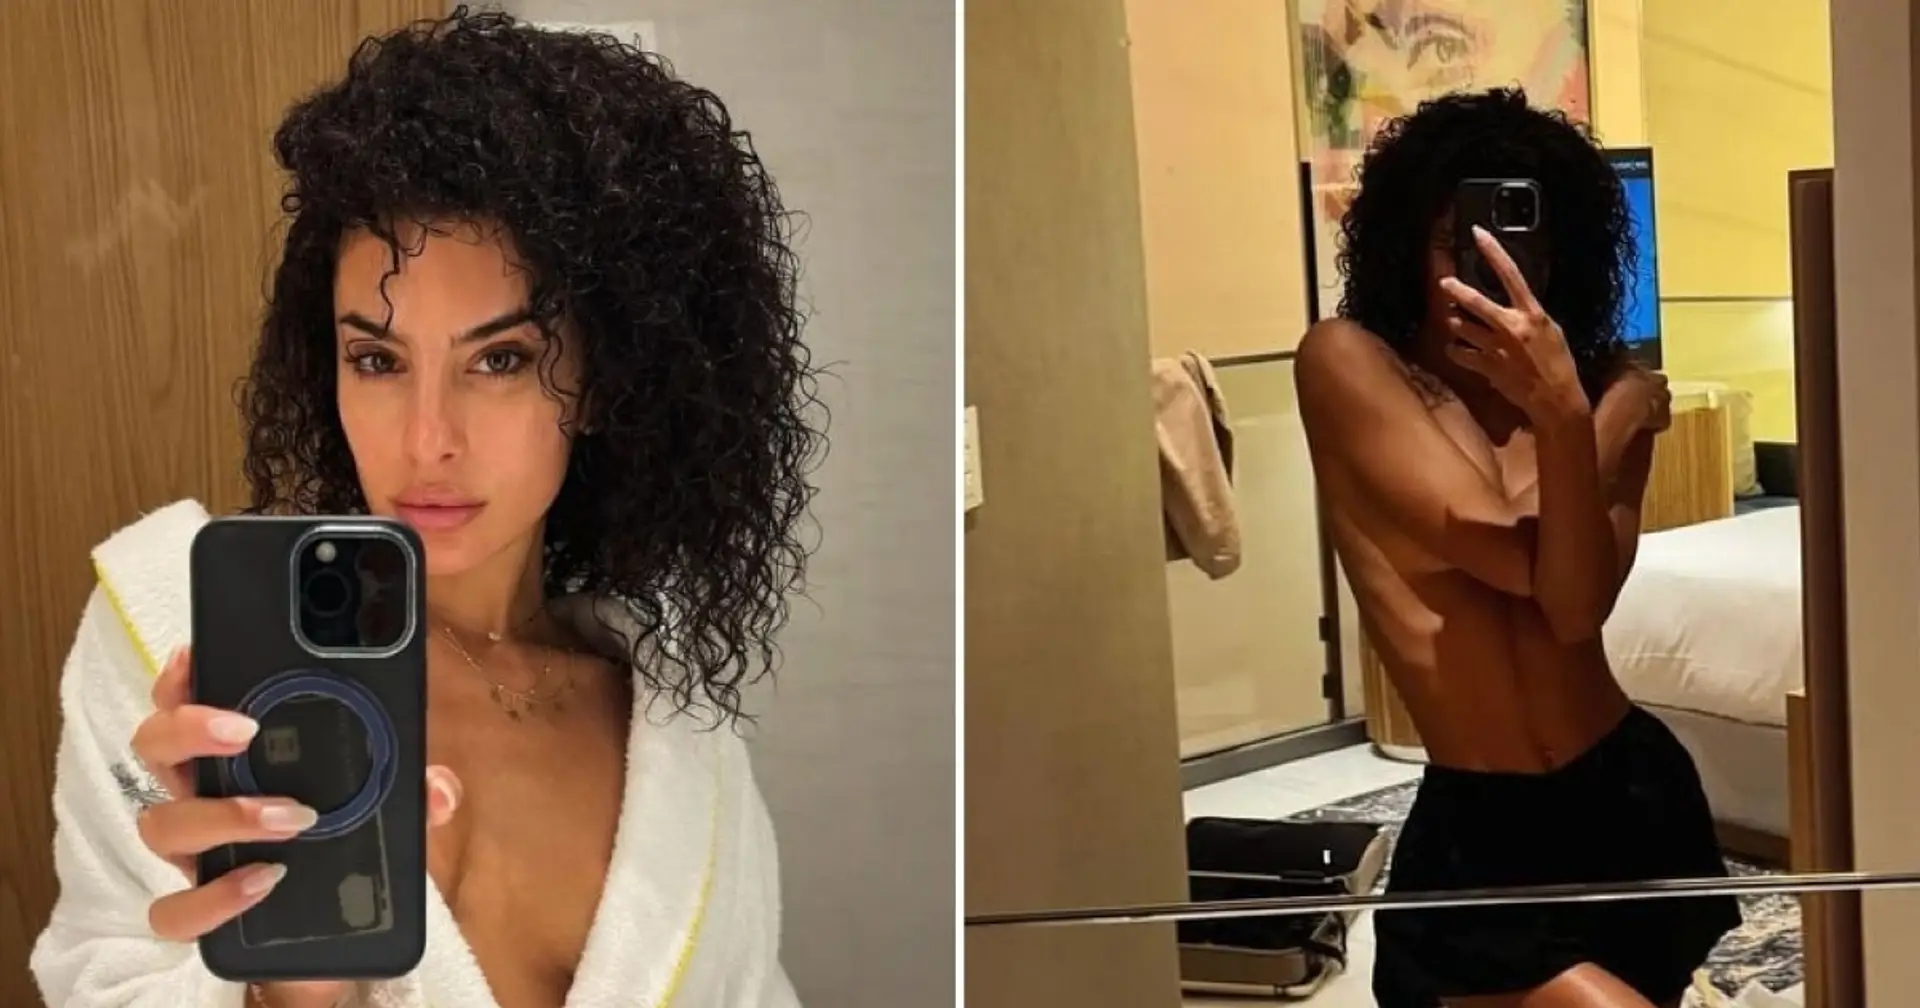 24 Stunden in Dubai: Marco Verattis Frau genießt das Leben im Nahen Osten und postet Topless-Fotos in den sozialen Medien